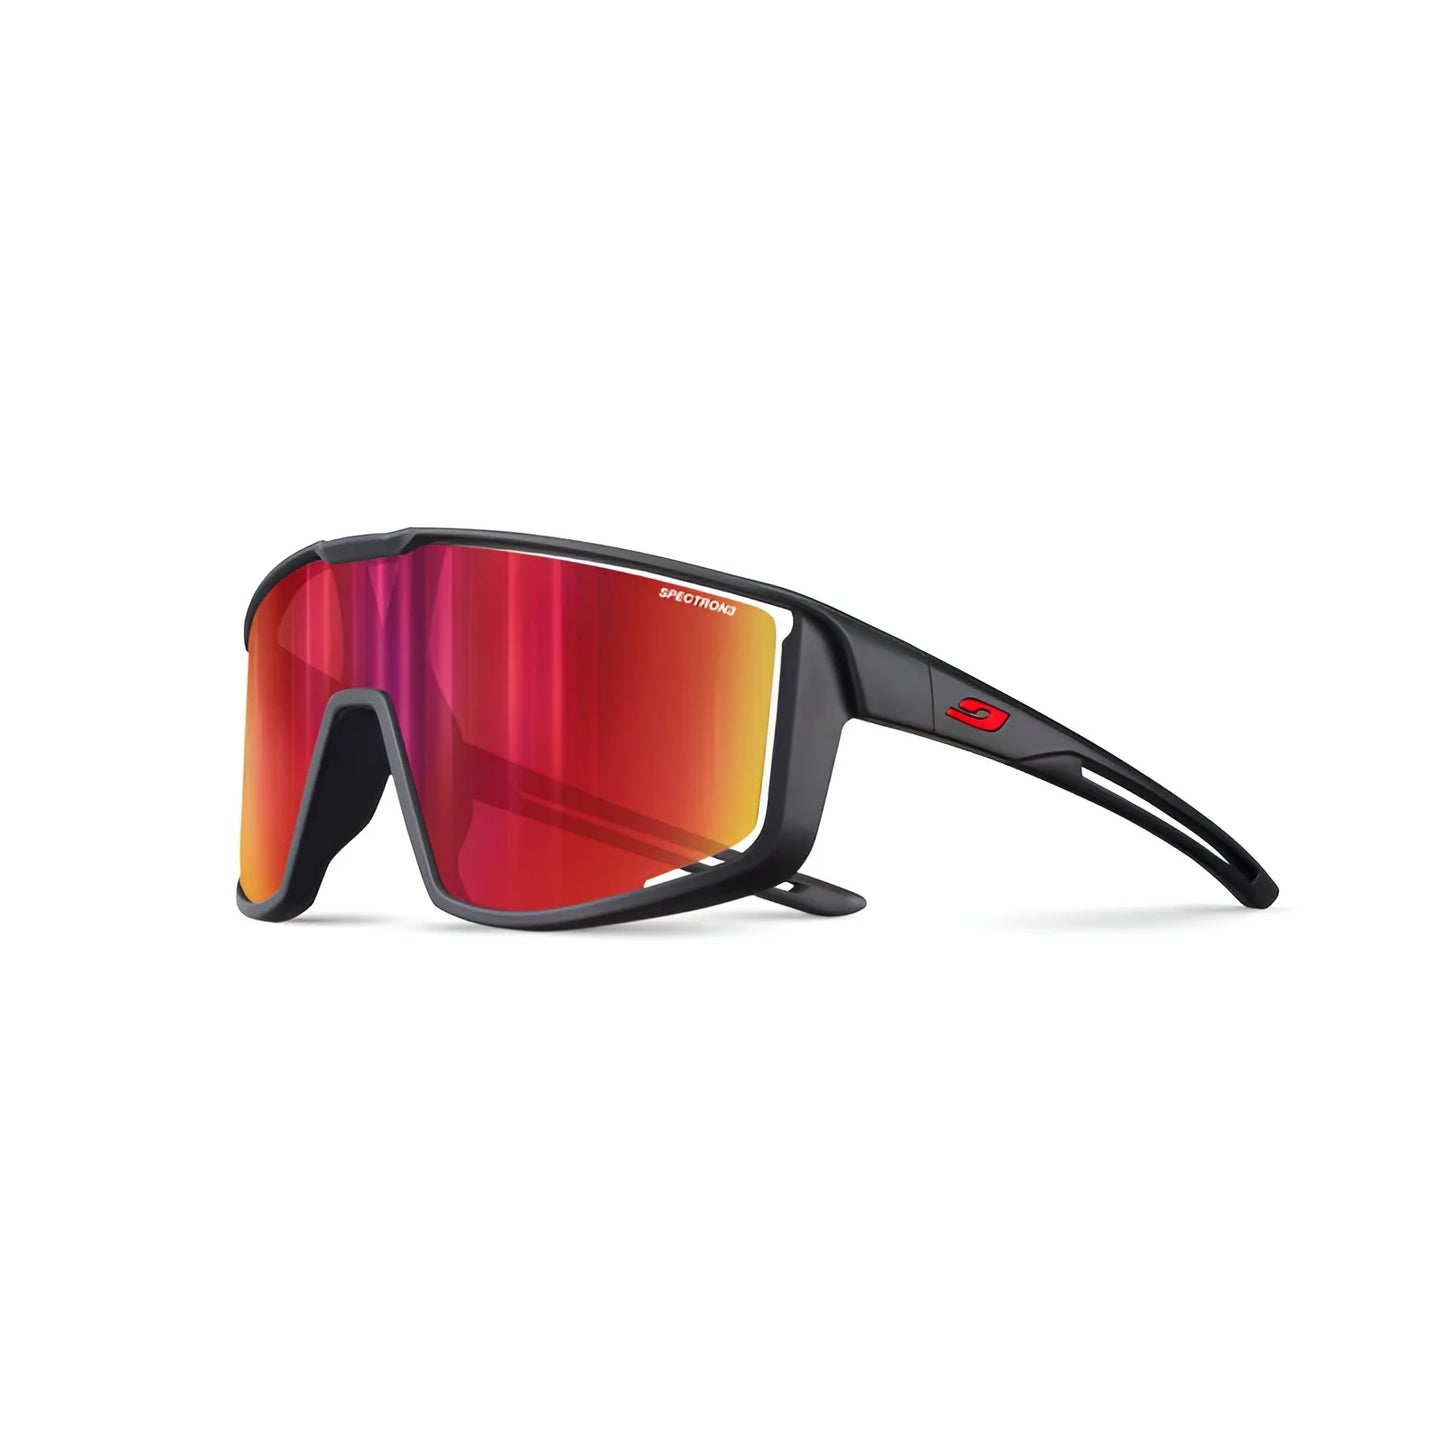 Julbo Fury S Sunglasses Black / Spectron 3 (VLT 13%)